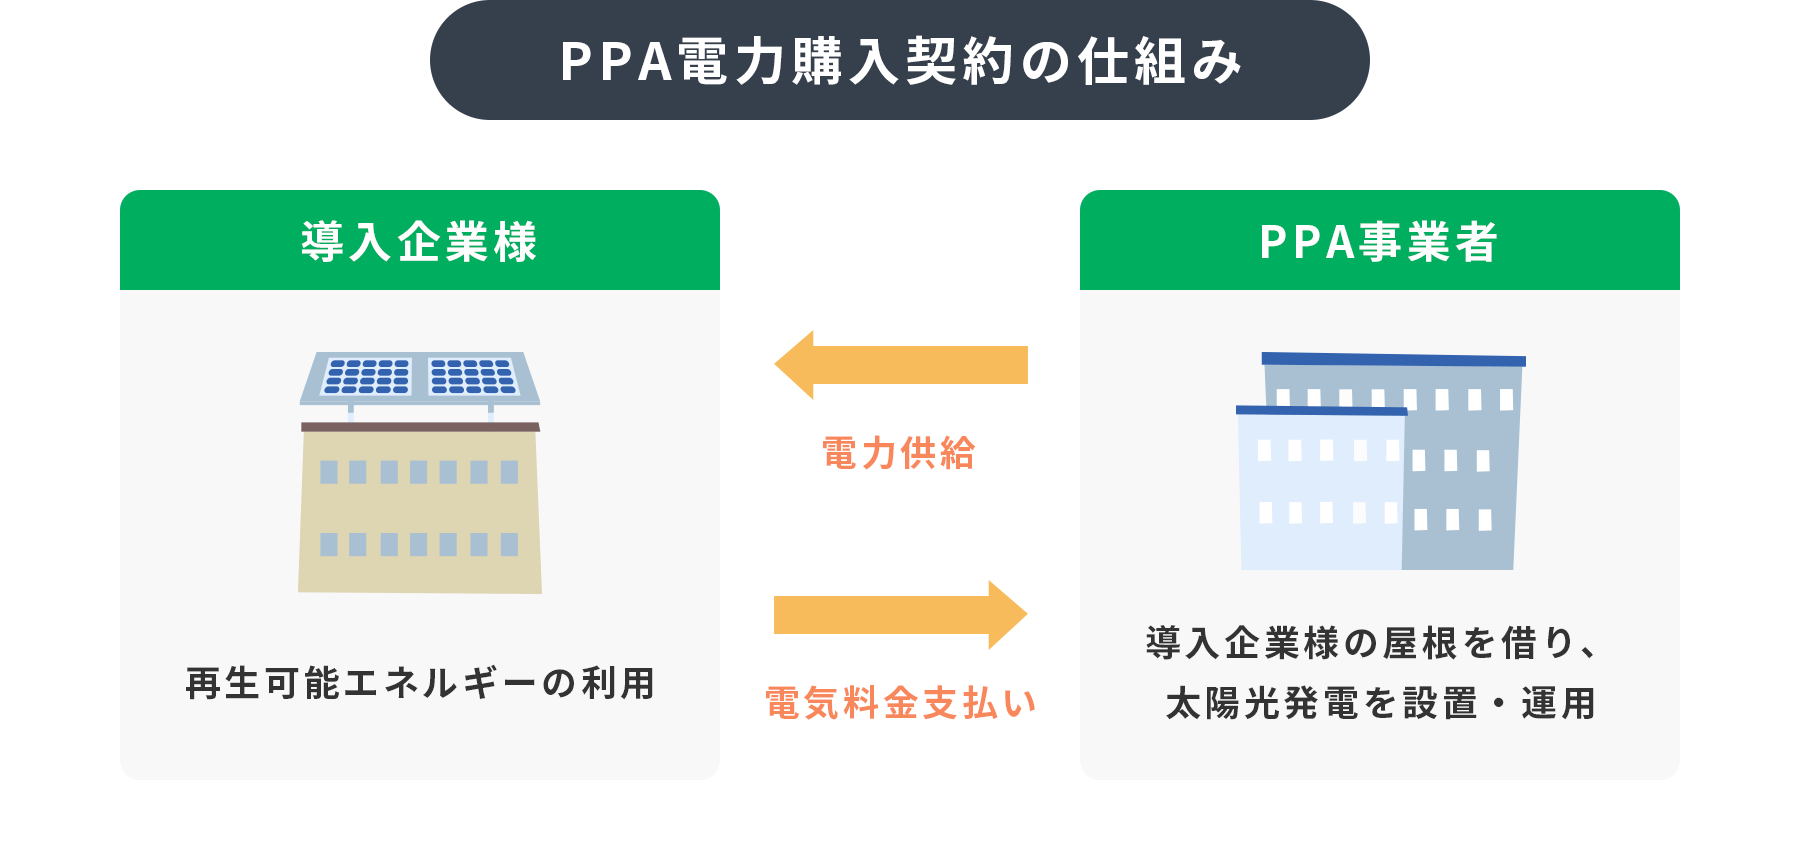 PPA電力購入契約の仕組み